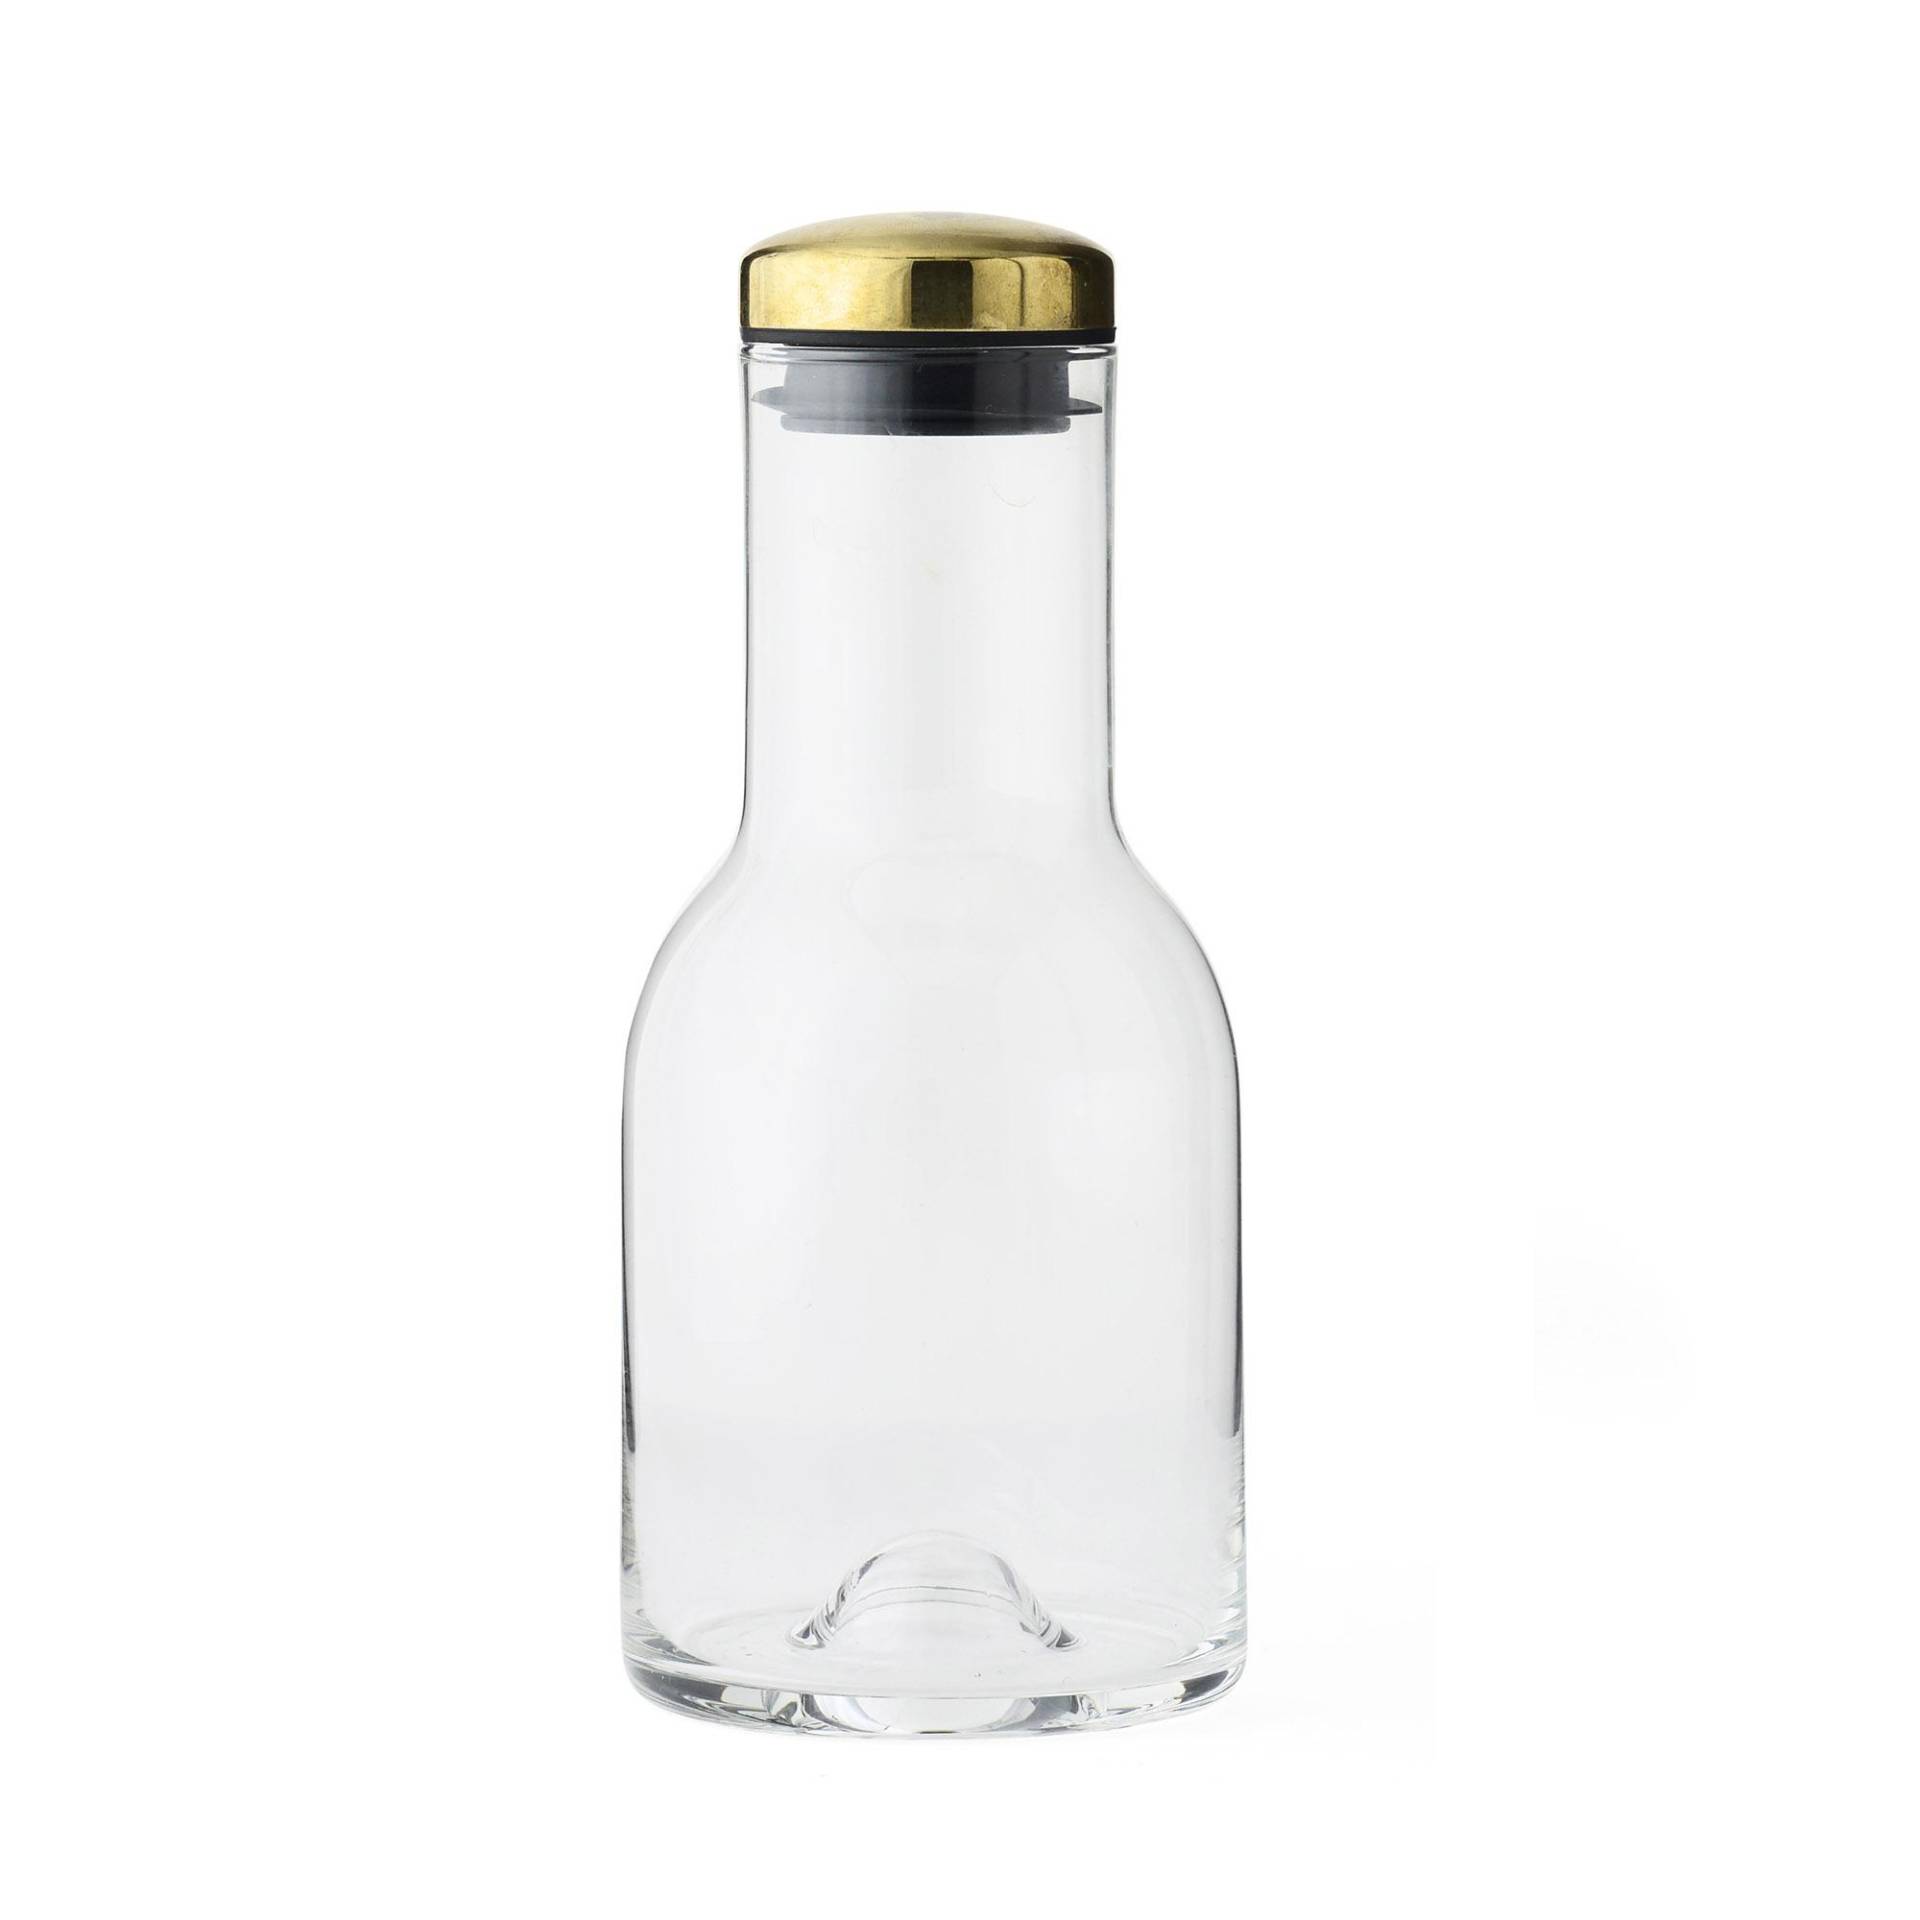 Audo - Bottle Karaffe mit Deckel 0.5L - messing/transparent/H 17,9cm, Ø 8cm von Audo